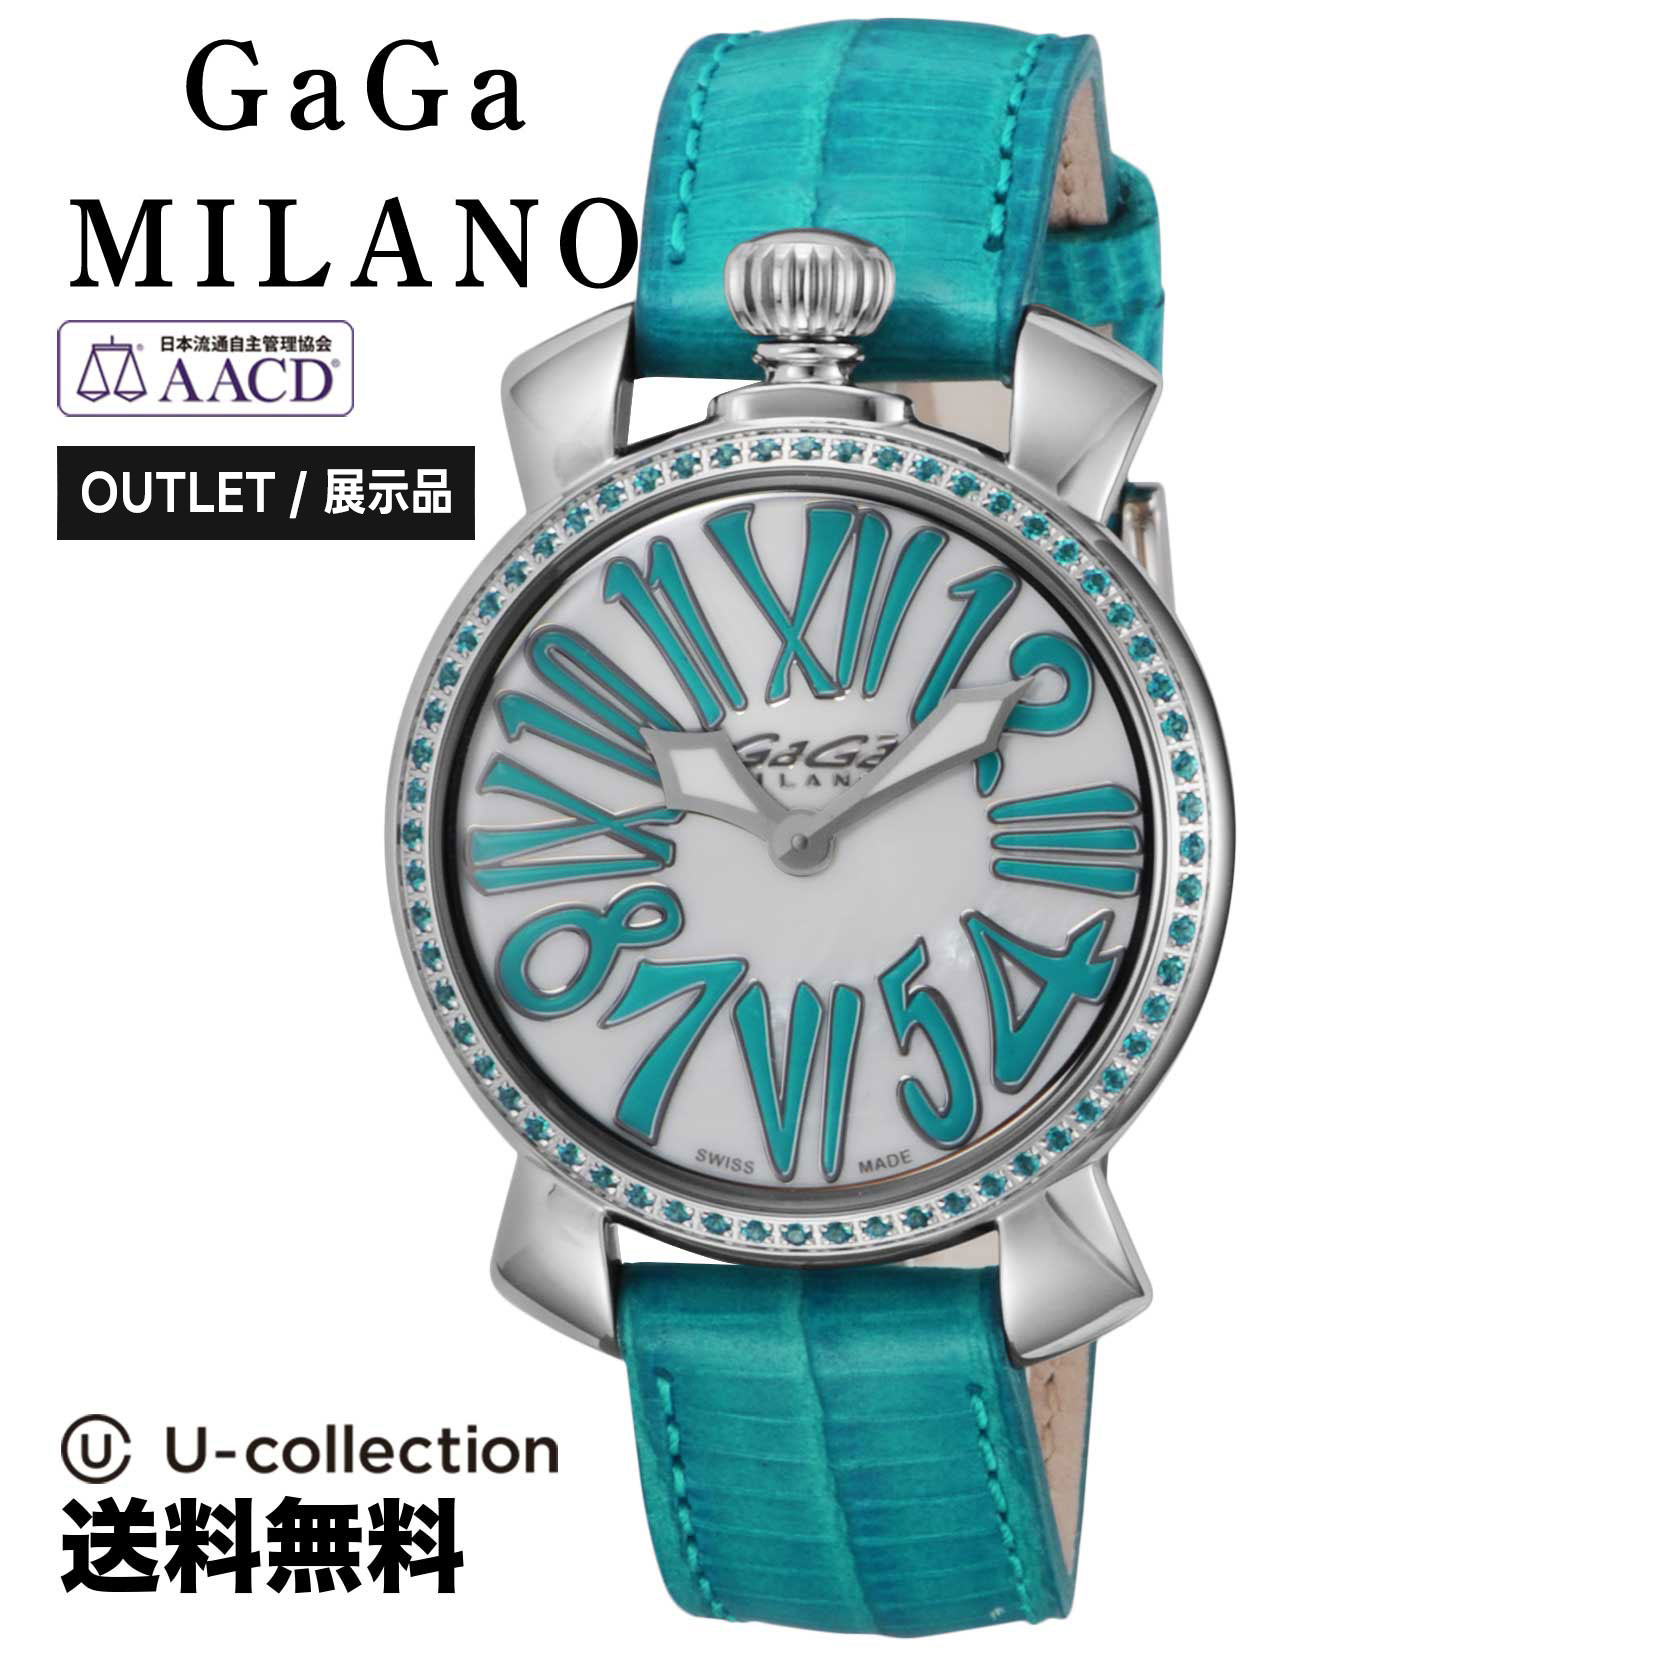 人気商品の 【OUTLET】GaGaMILANガガミラノMANUALE35MMSTONESクォ－ツレディースホワイト6025.03時計腕時計高級腕時計ブランド レディース腕時計